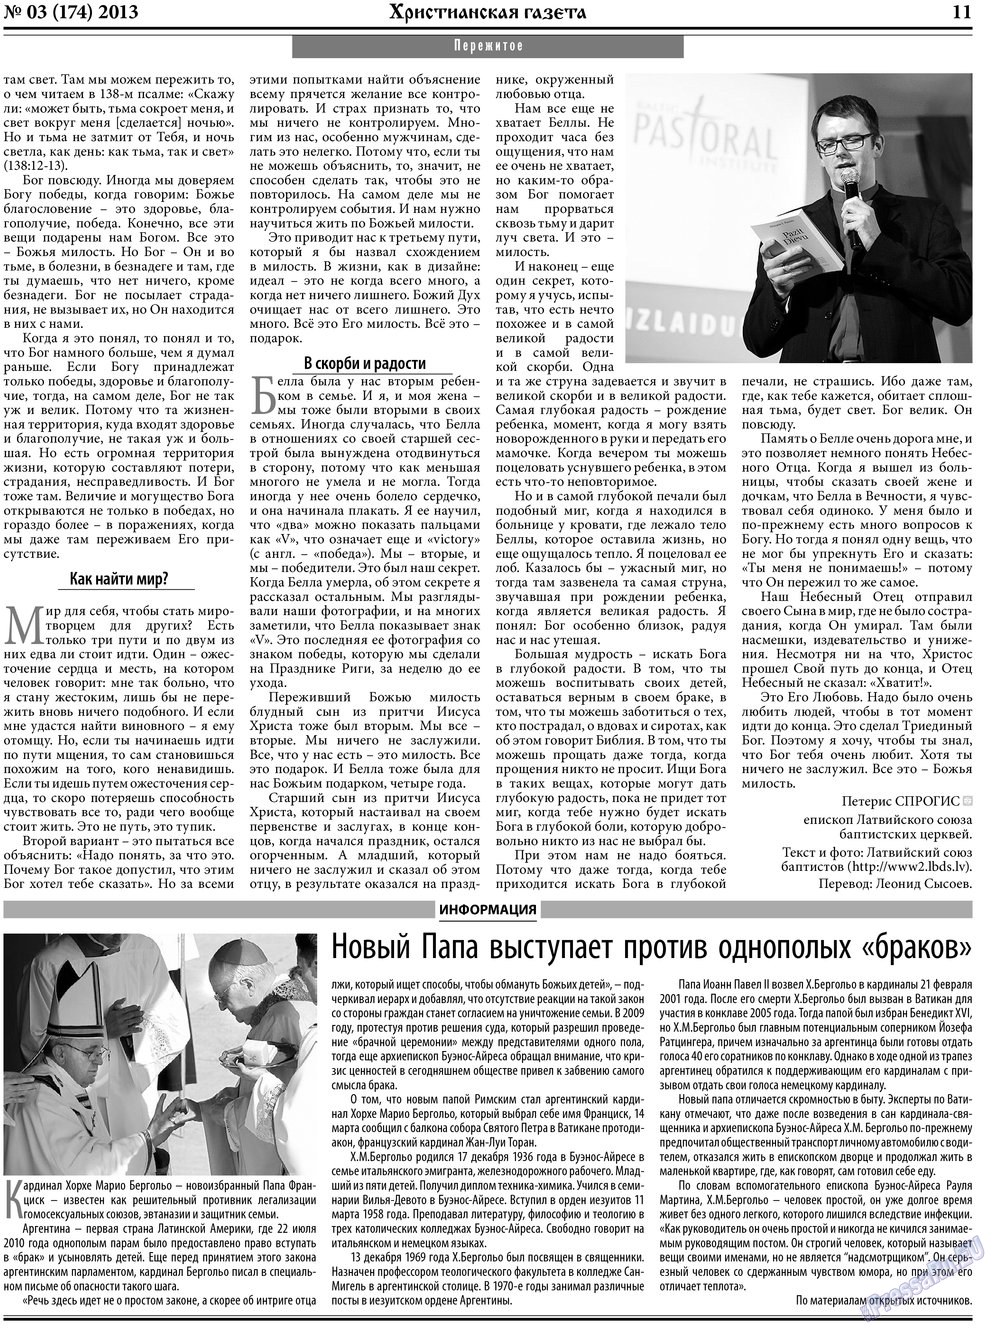 Христианская газета (газета). 2013 год, номер 3, стр. 11